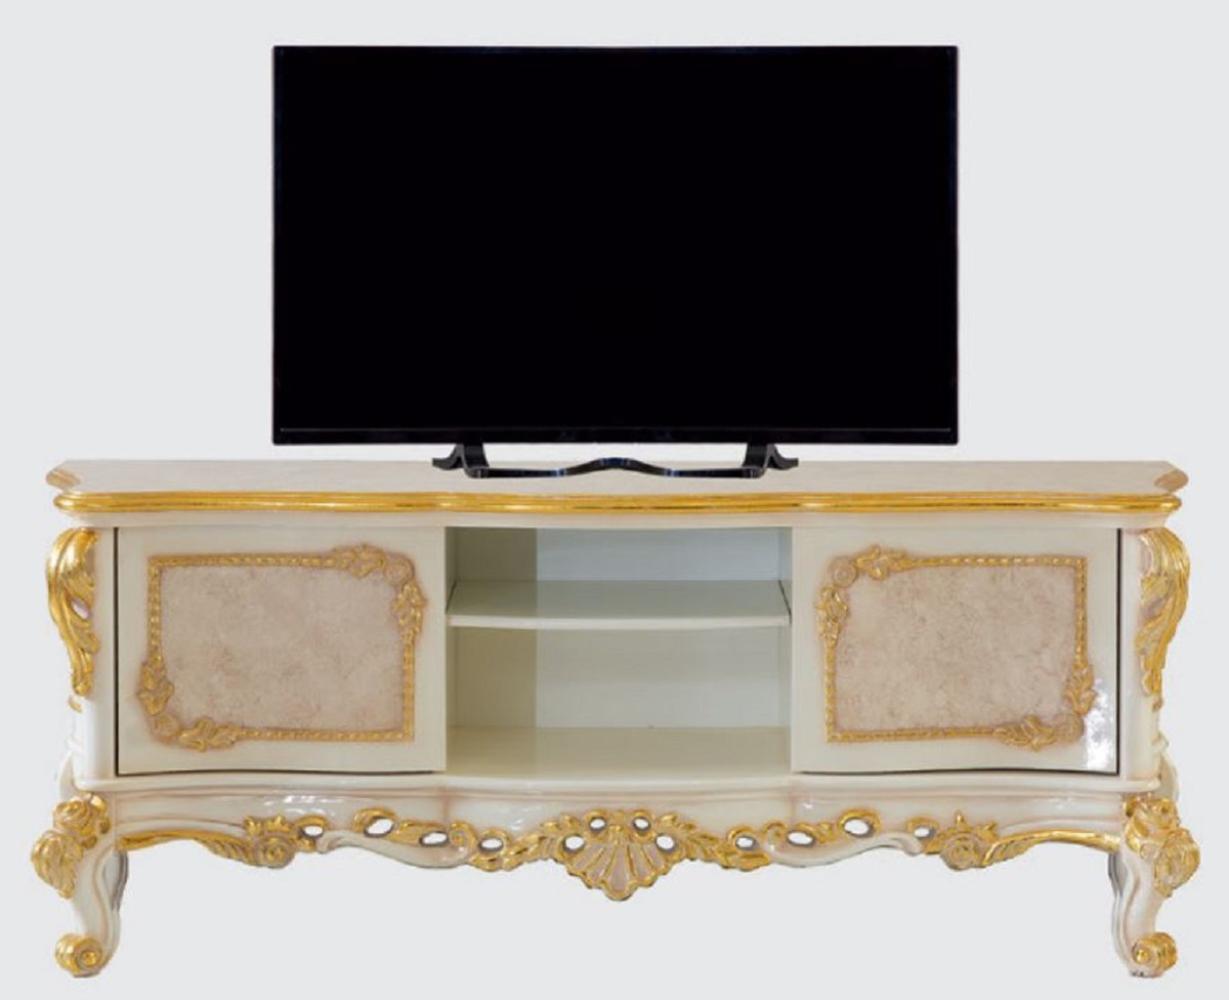 Casa Padrino Luxus Barock TV Schrank Beige / Weiß / Gold - Prunkvolles Wohnzimmer Sideboard mit 2 Türen - Barock Wohnzimmer Möbel Bild 1